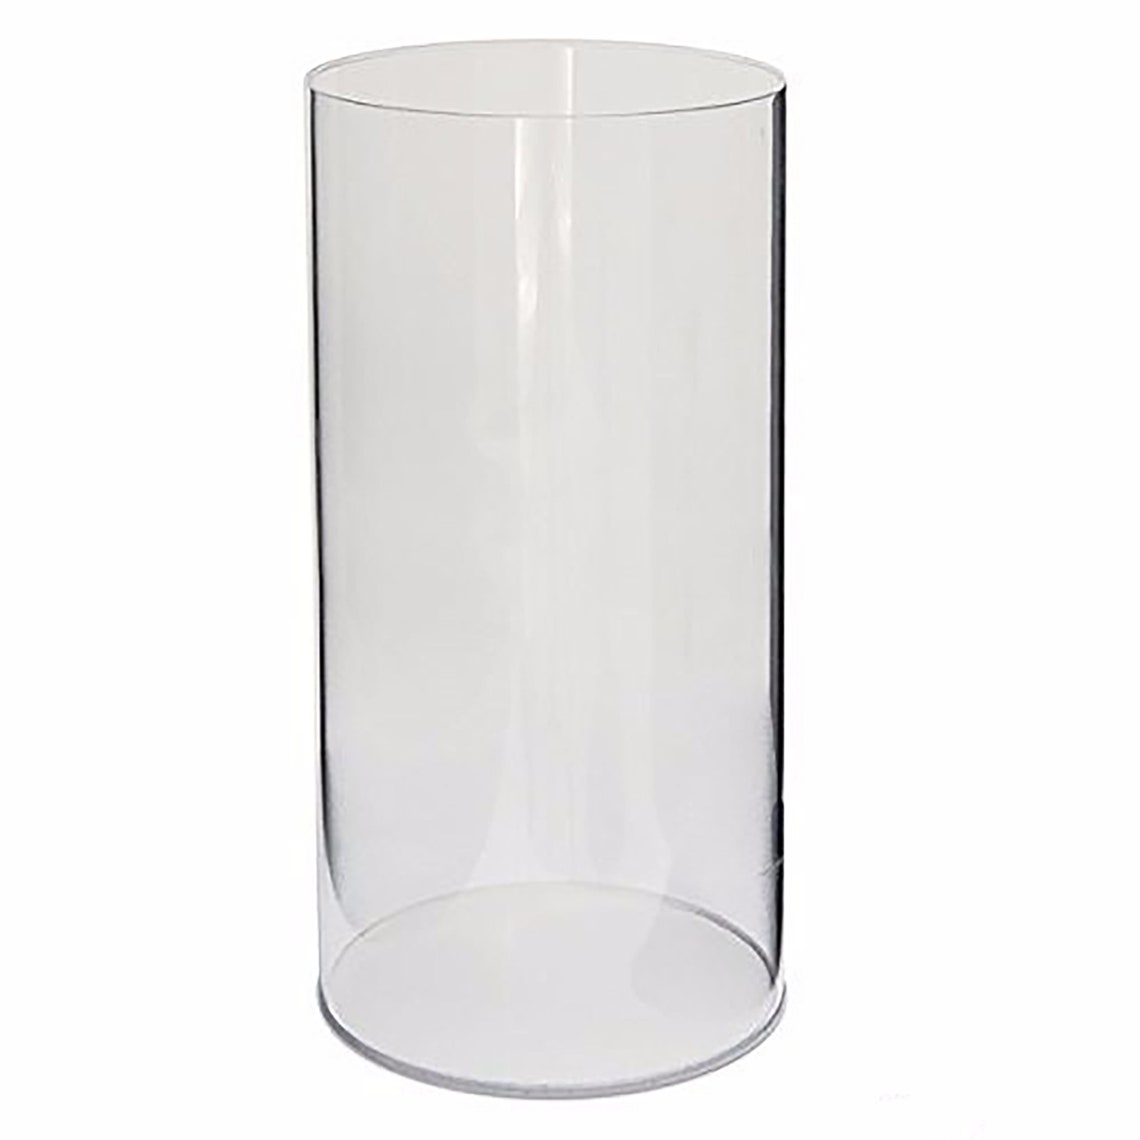 Round Clear Acrylic Cylinder Display Plexiglass Column Plinths ...